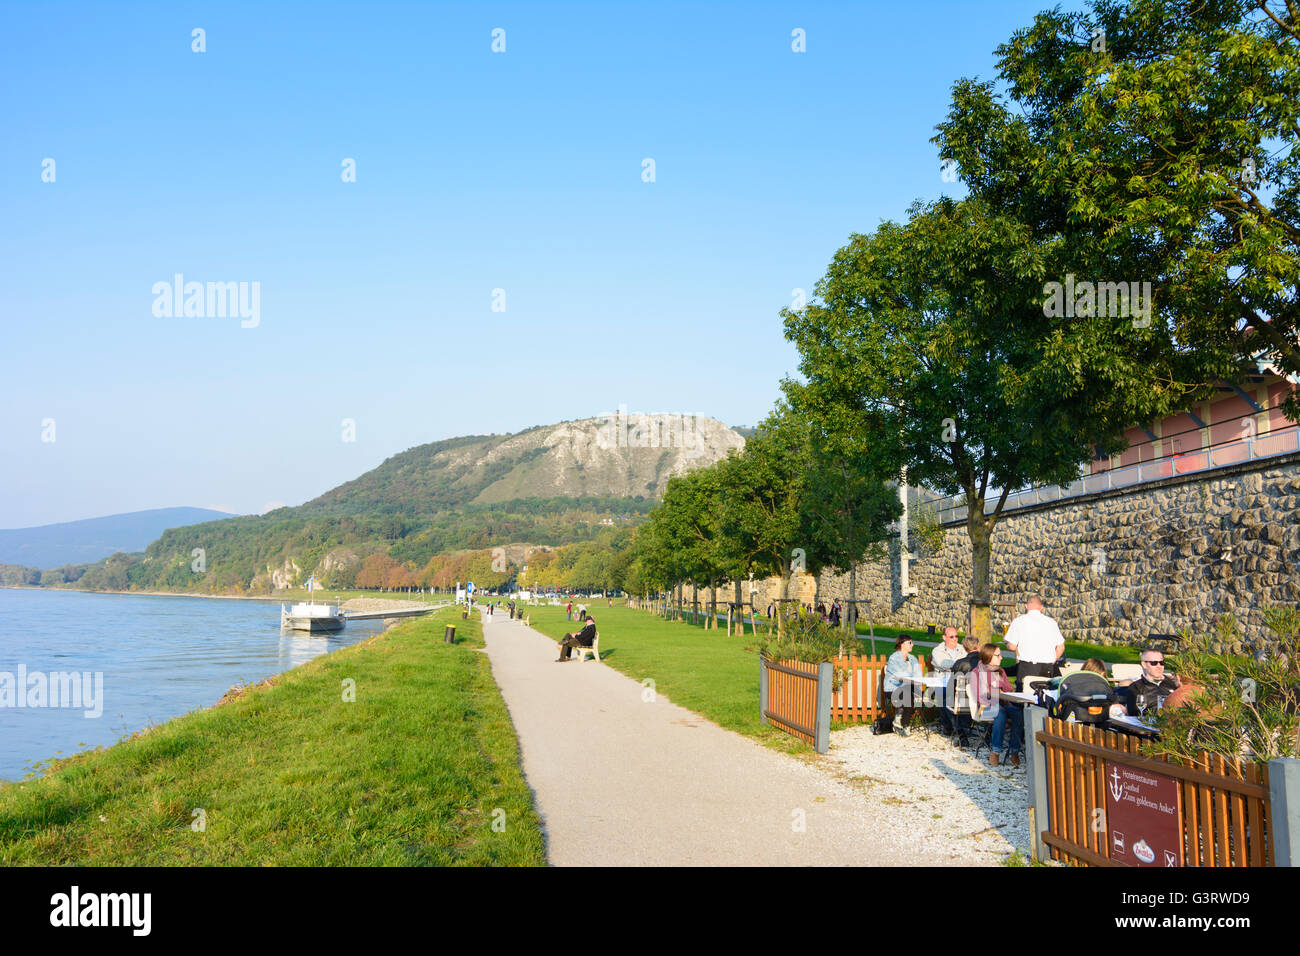 Promenade on the Danube , look for Braunsberg, Austria, Niederösterreich, Lower Austria, Donau, Hainburg an der Donau Stock Photo